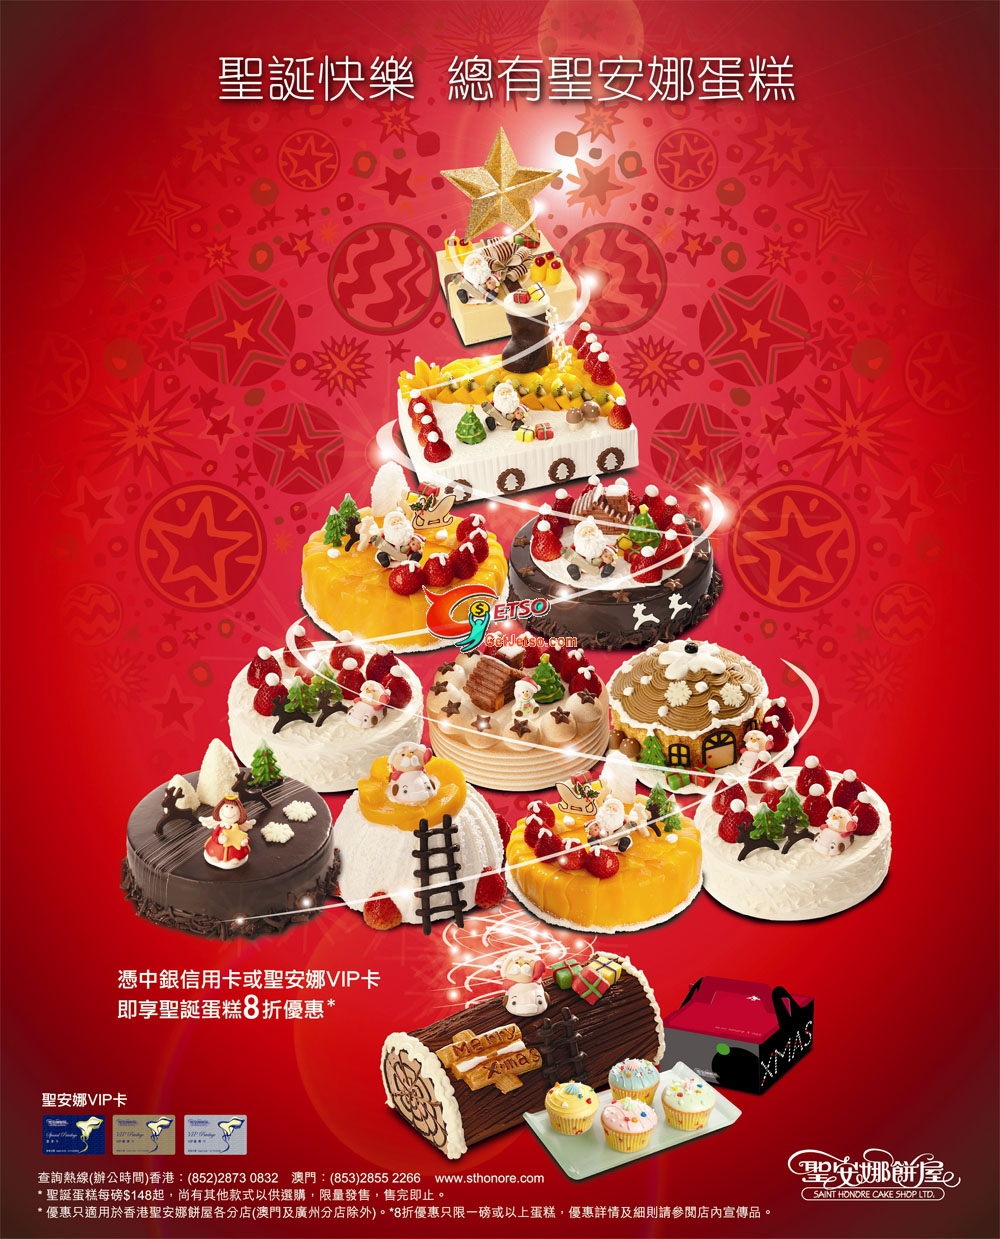 中銀信用卡尊享聖安娜聖誕蛋糕8折優惠圖片1